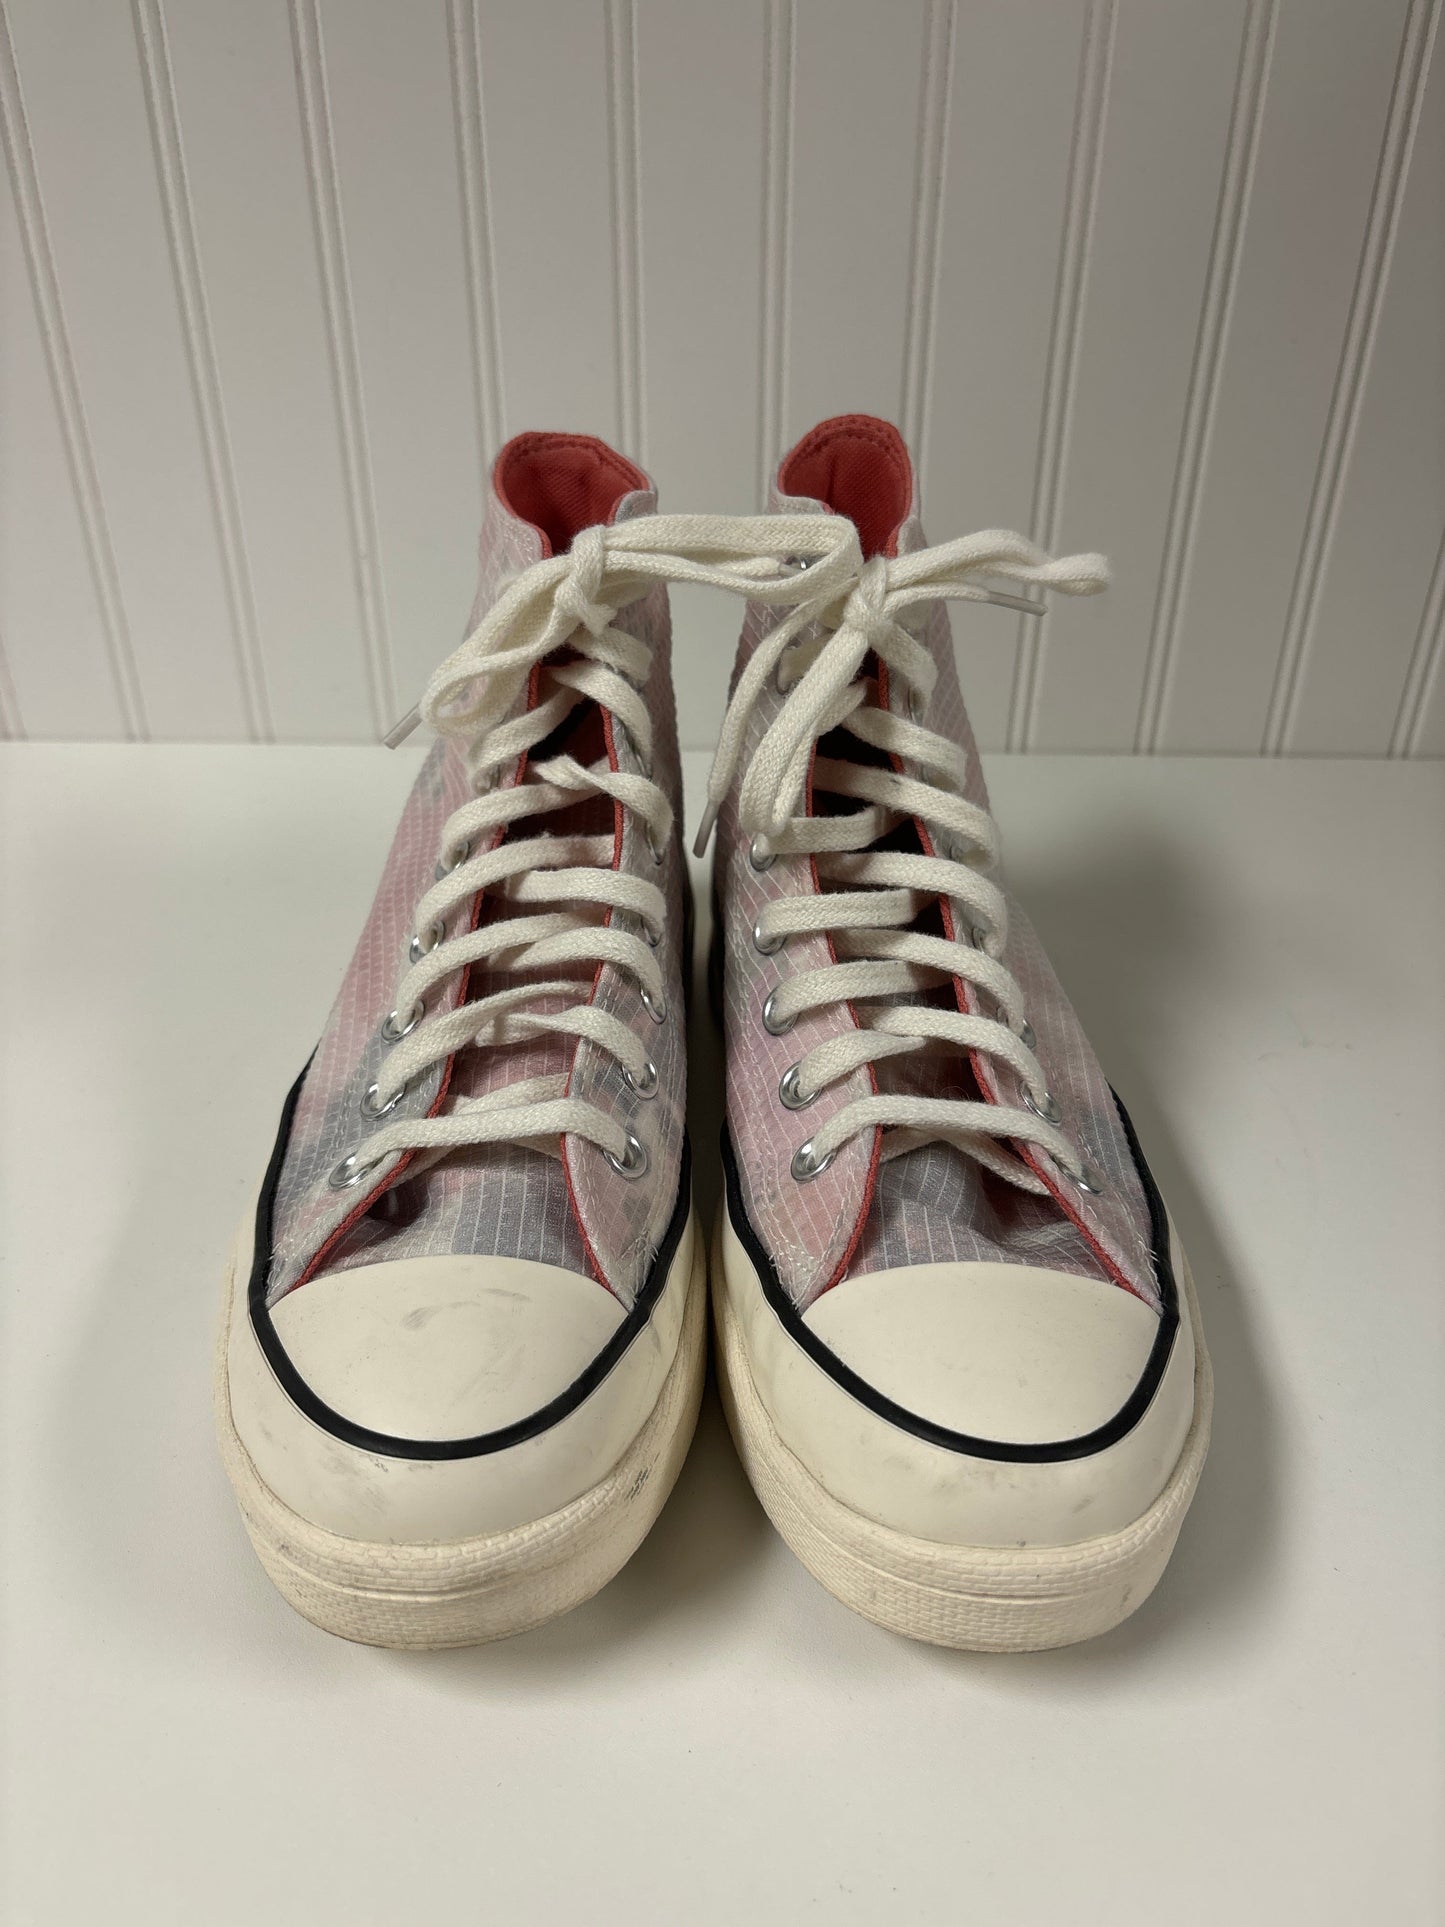 Tie Dye Print Shoes Sneakers Converse, Size 8.5